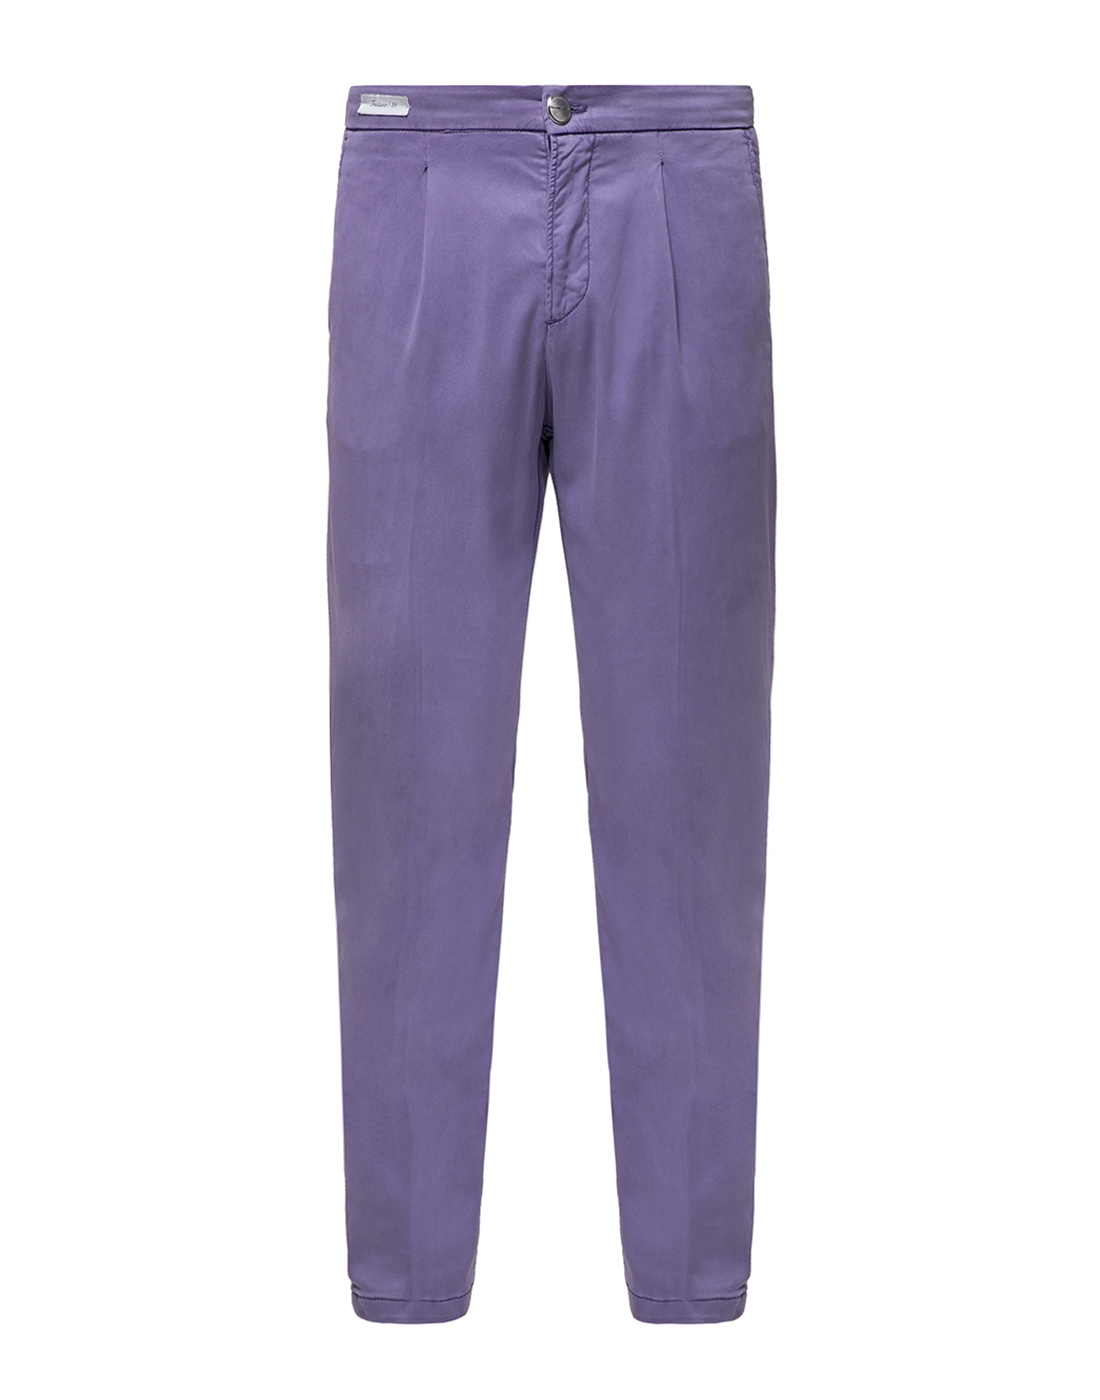 Мужские сиреневые брюки Richard J. Brown ST166.580-1